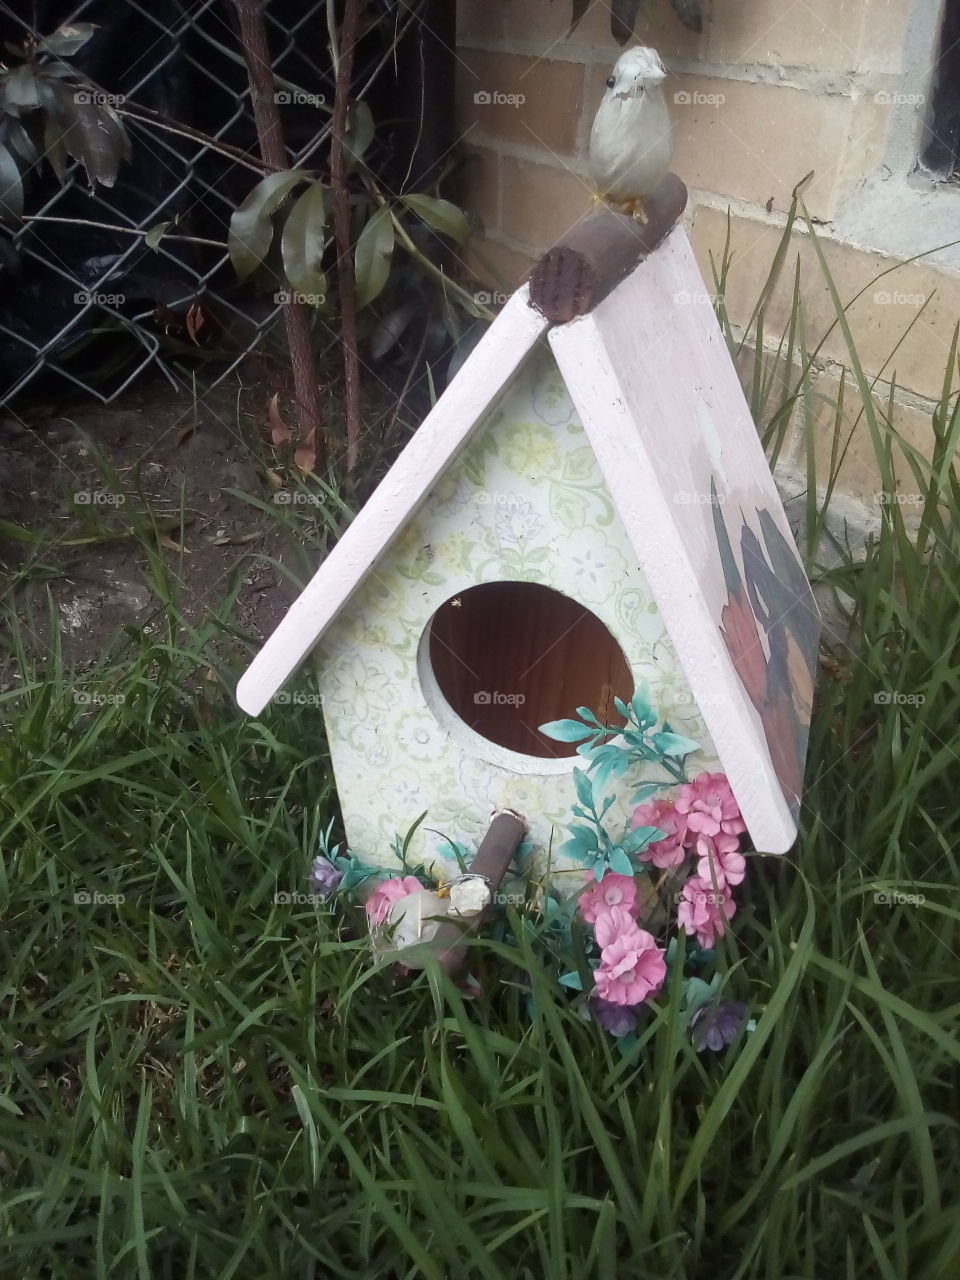 Casa para aves, en el jardín.